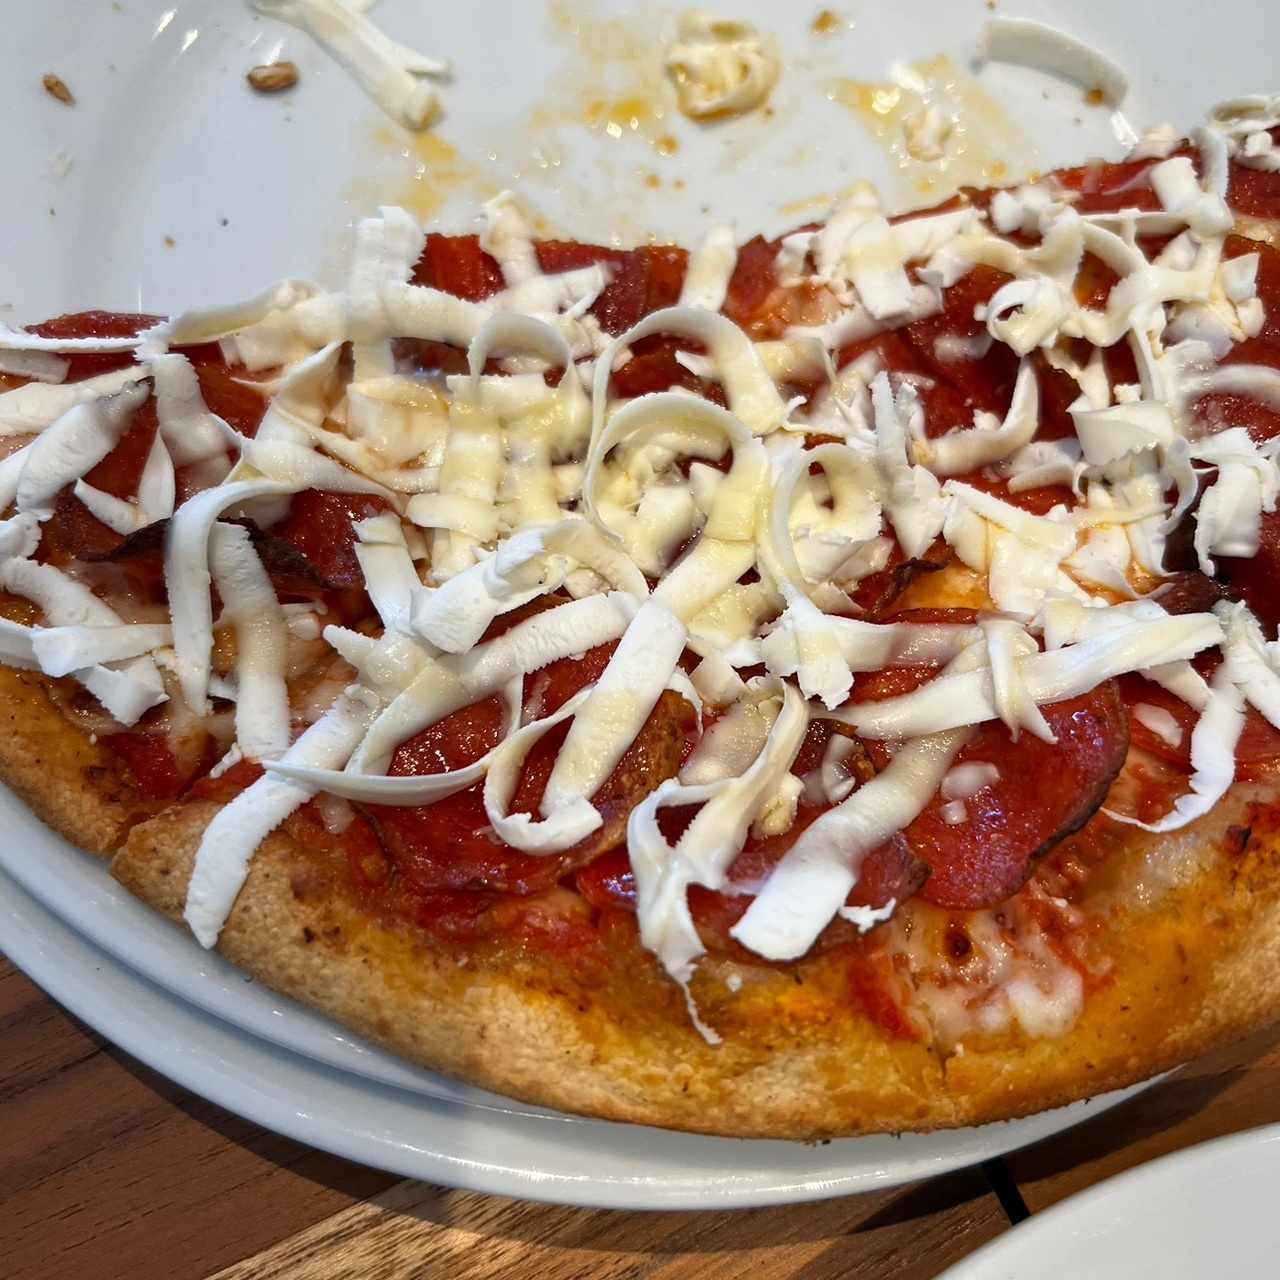 Pizza de pepperoni y queso fetta